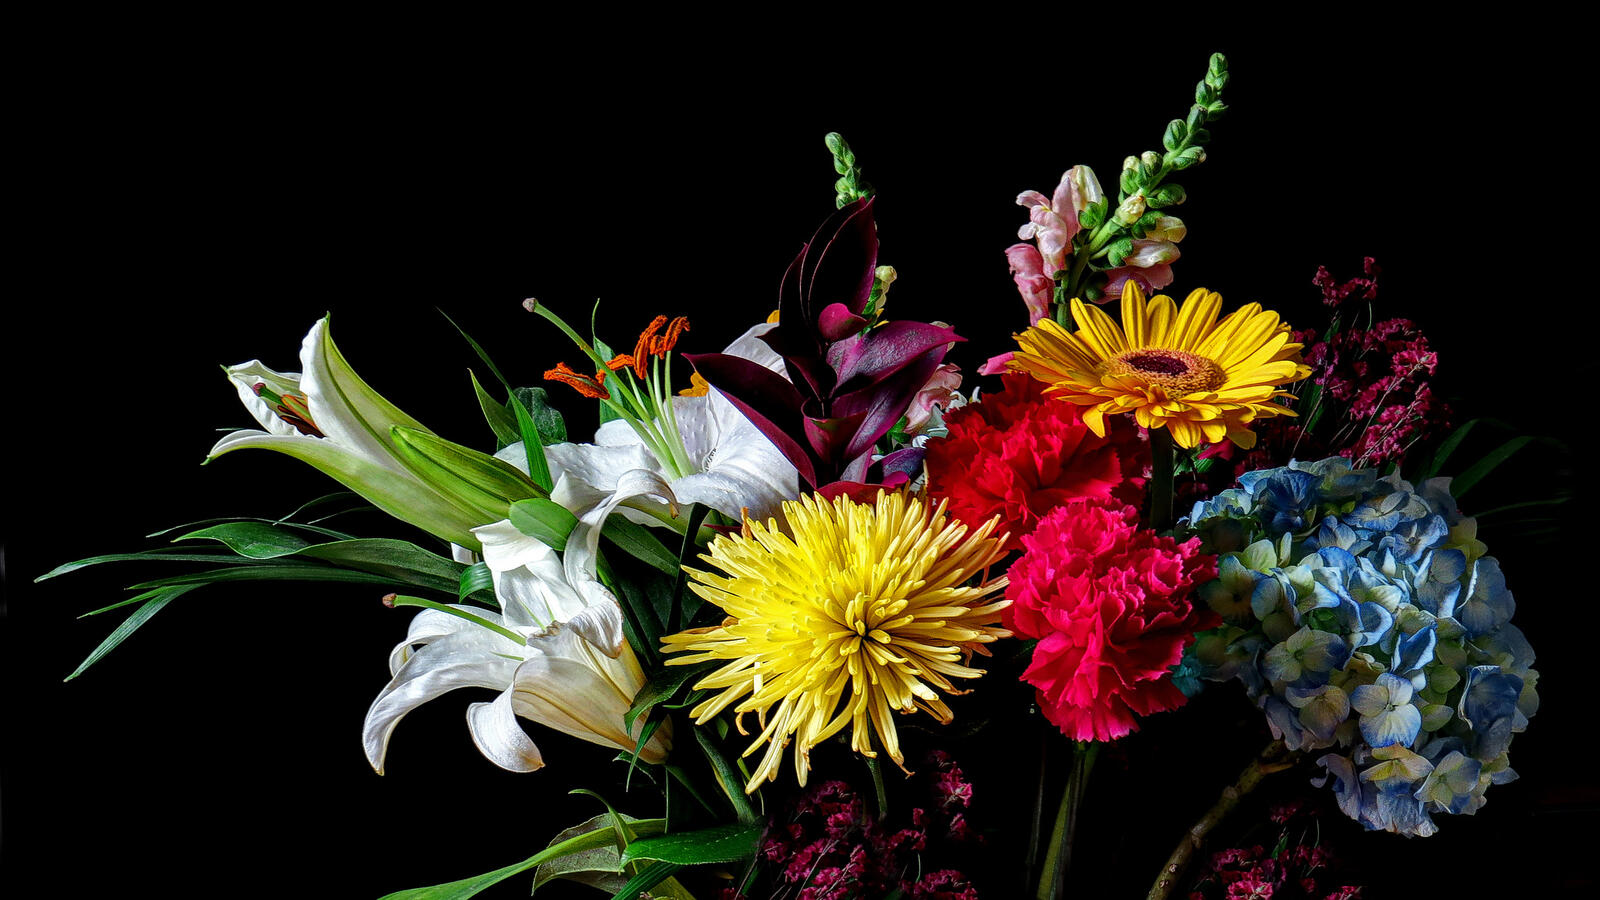 Wallpapers floral festive bouquet flower arrangement on the desktop